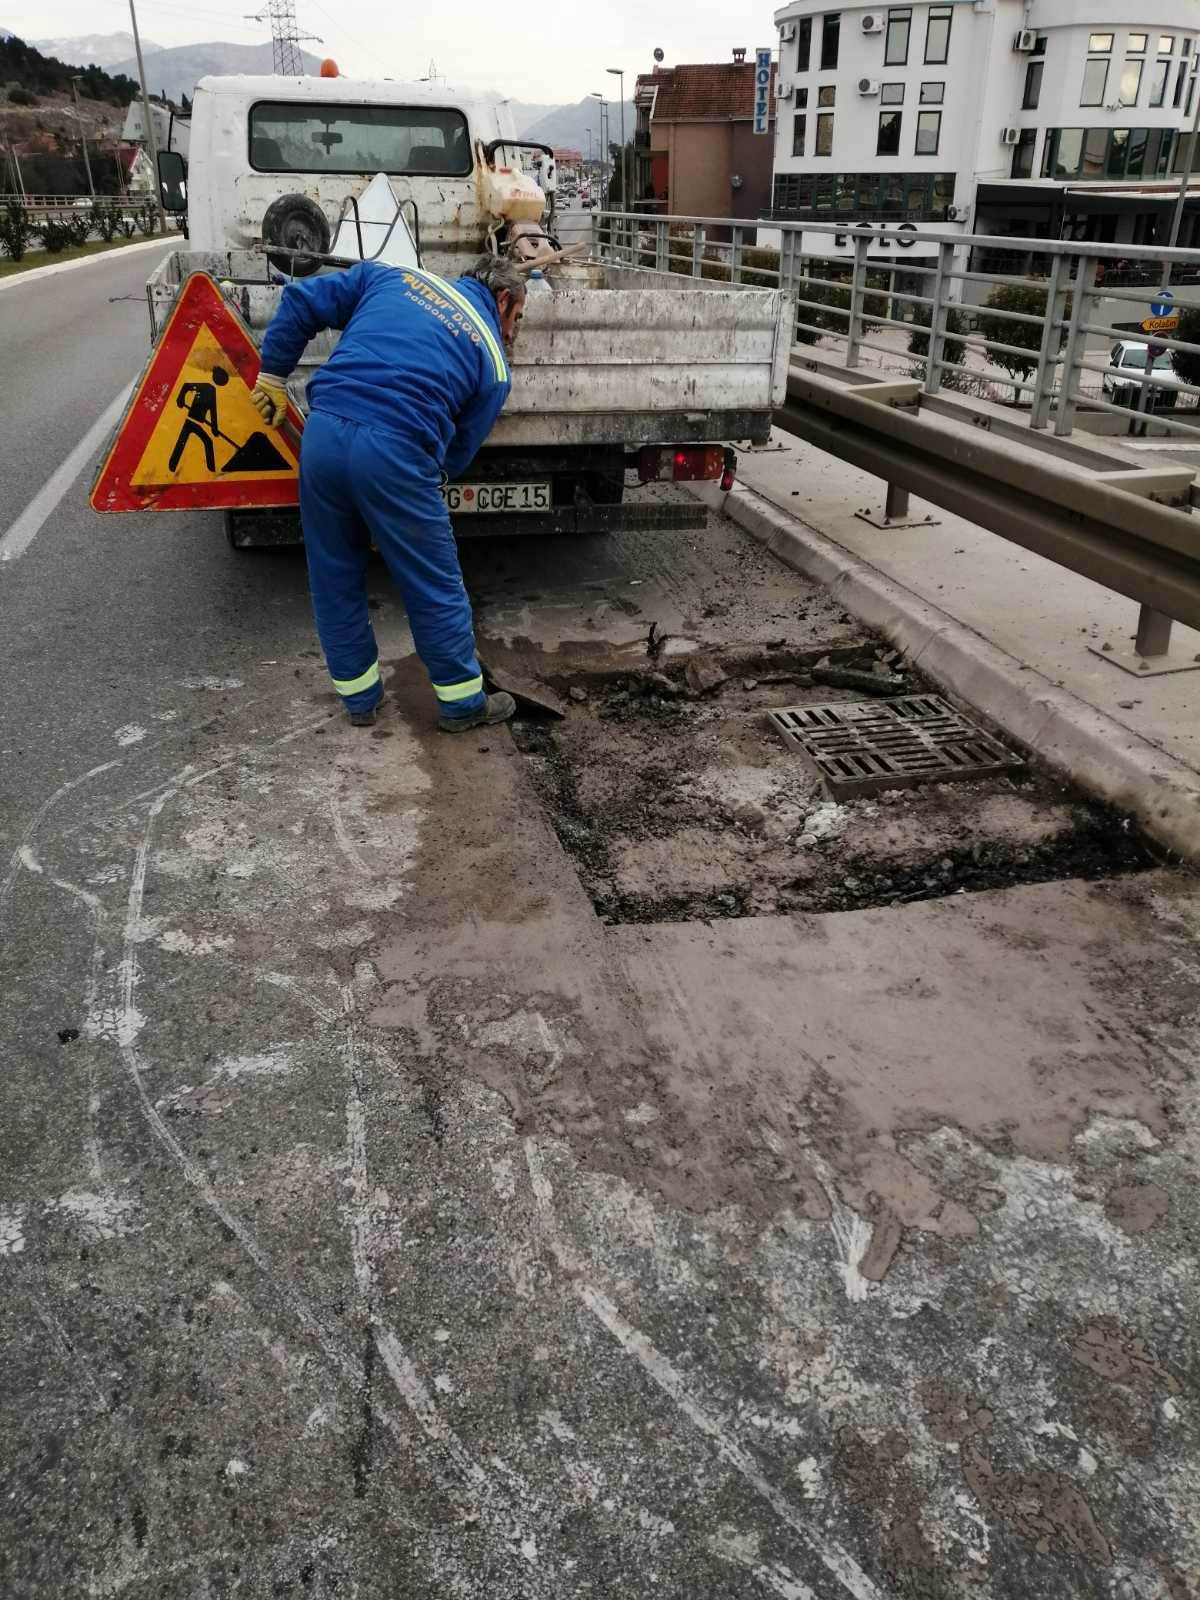  Putevi tužili Ministarstvo ekologije zbog zatvaranja asfaltne baze 